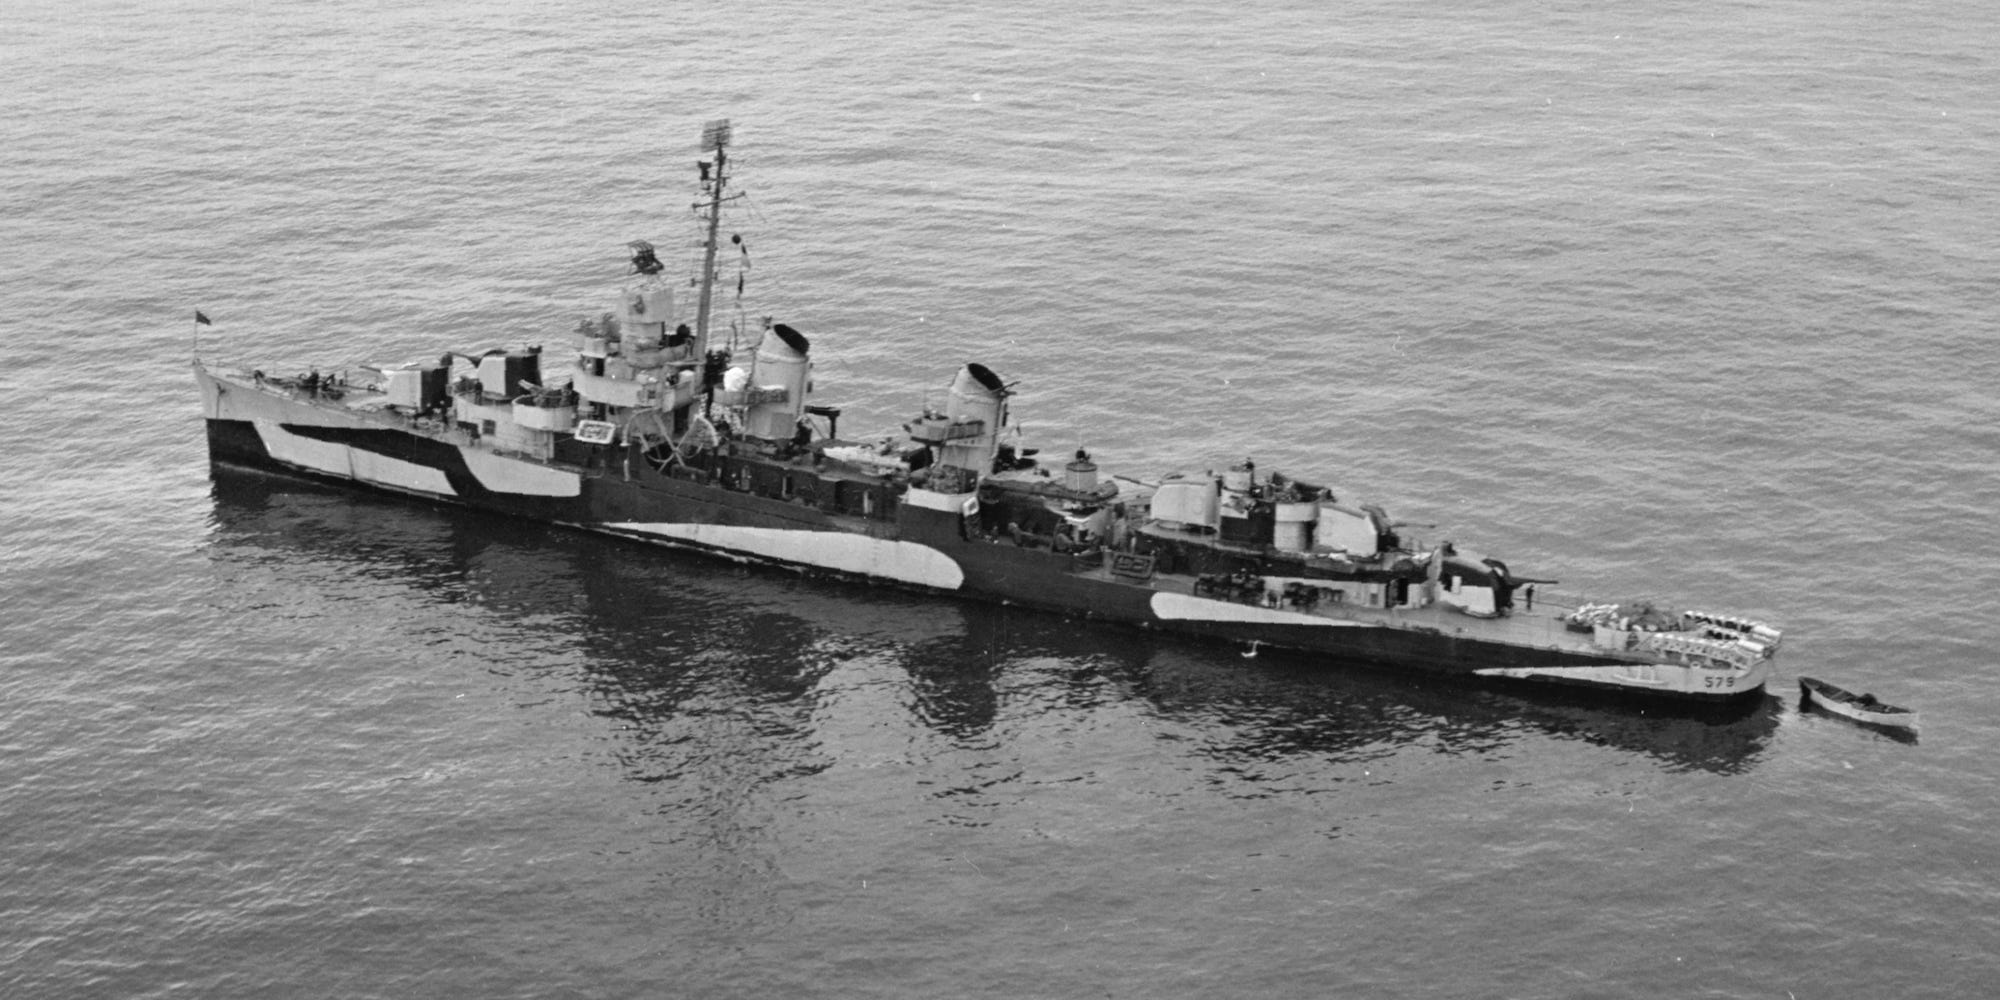 Navy destroyer USS William D. Porter